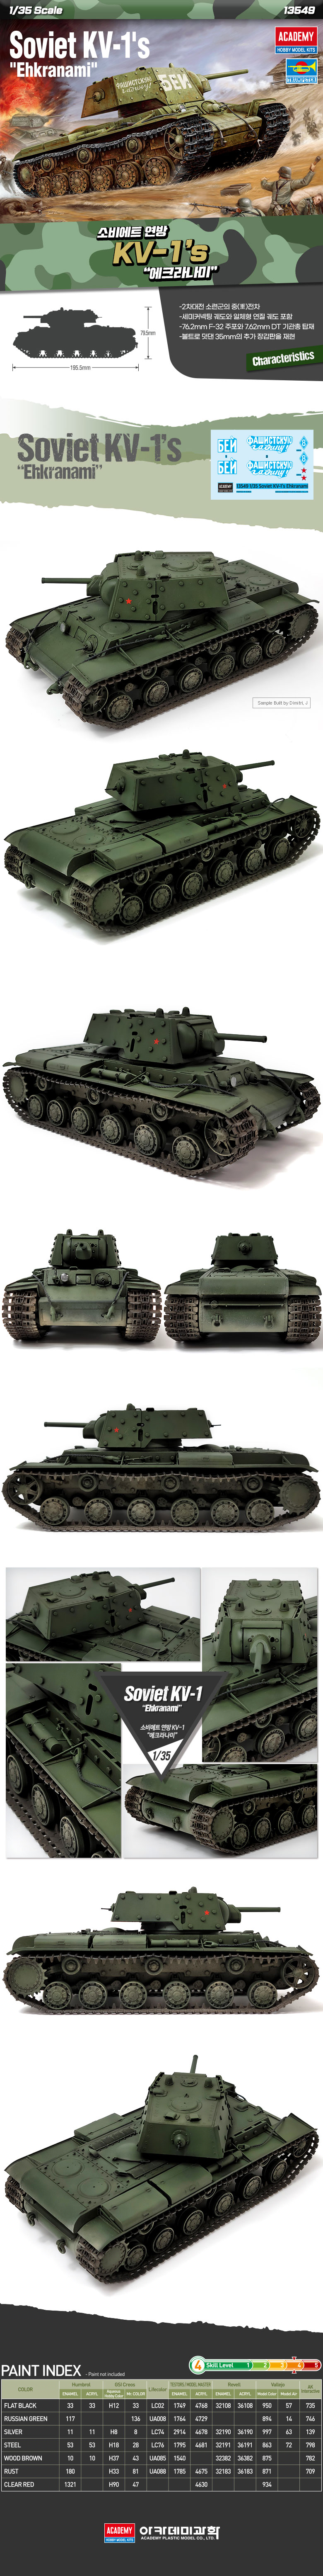 35sc 소비에트 연방 KV-1`s 에크라나미 2차대전 탱크 41,000원 - 프로메딕 키덜트/취미, 프라모델, 밀리터리 프라모델, 지상 전투 바보사랑 35sc 소비에트 연방 KV-1`s 에크라나미 2차대전 탱크 41,000원 - 프로메딕 키덜트/취미, 프라모델, 밀리터리 프라모델, 지상 전투 바보사랑